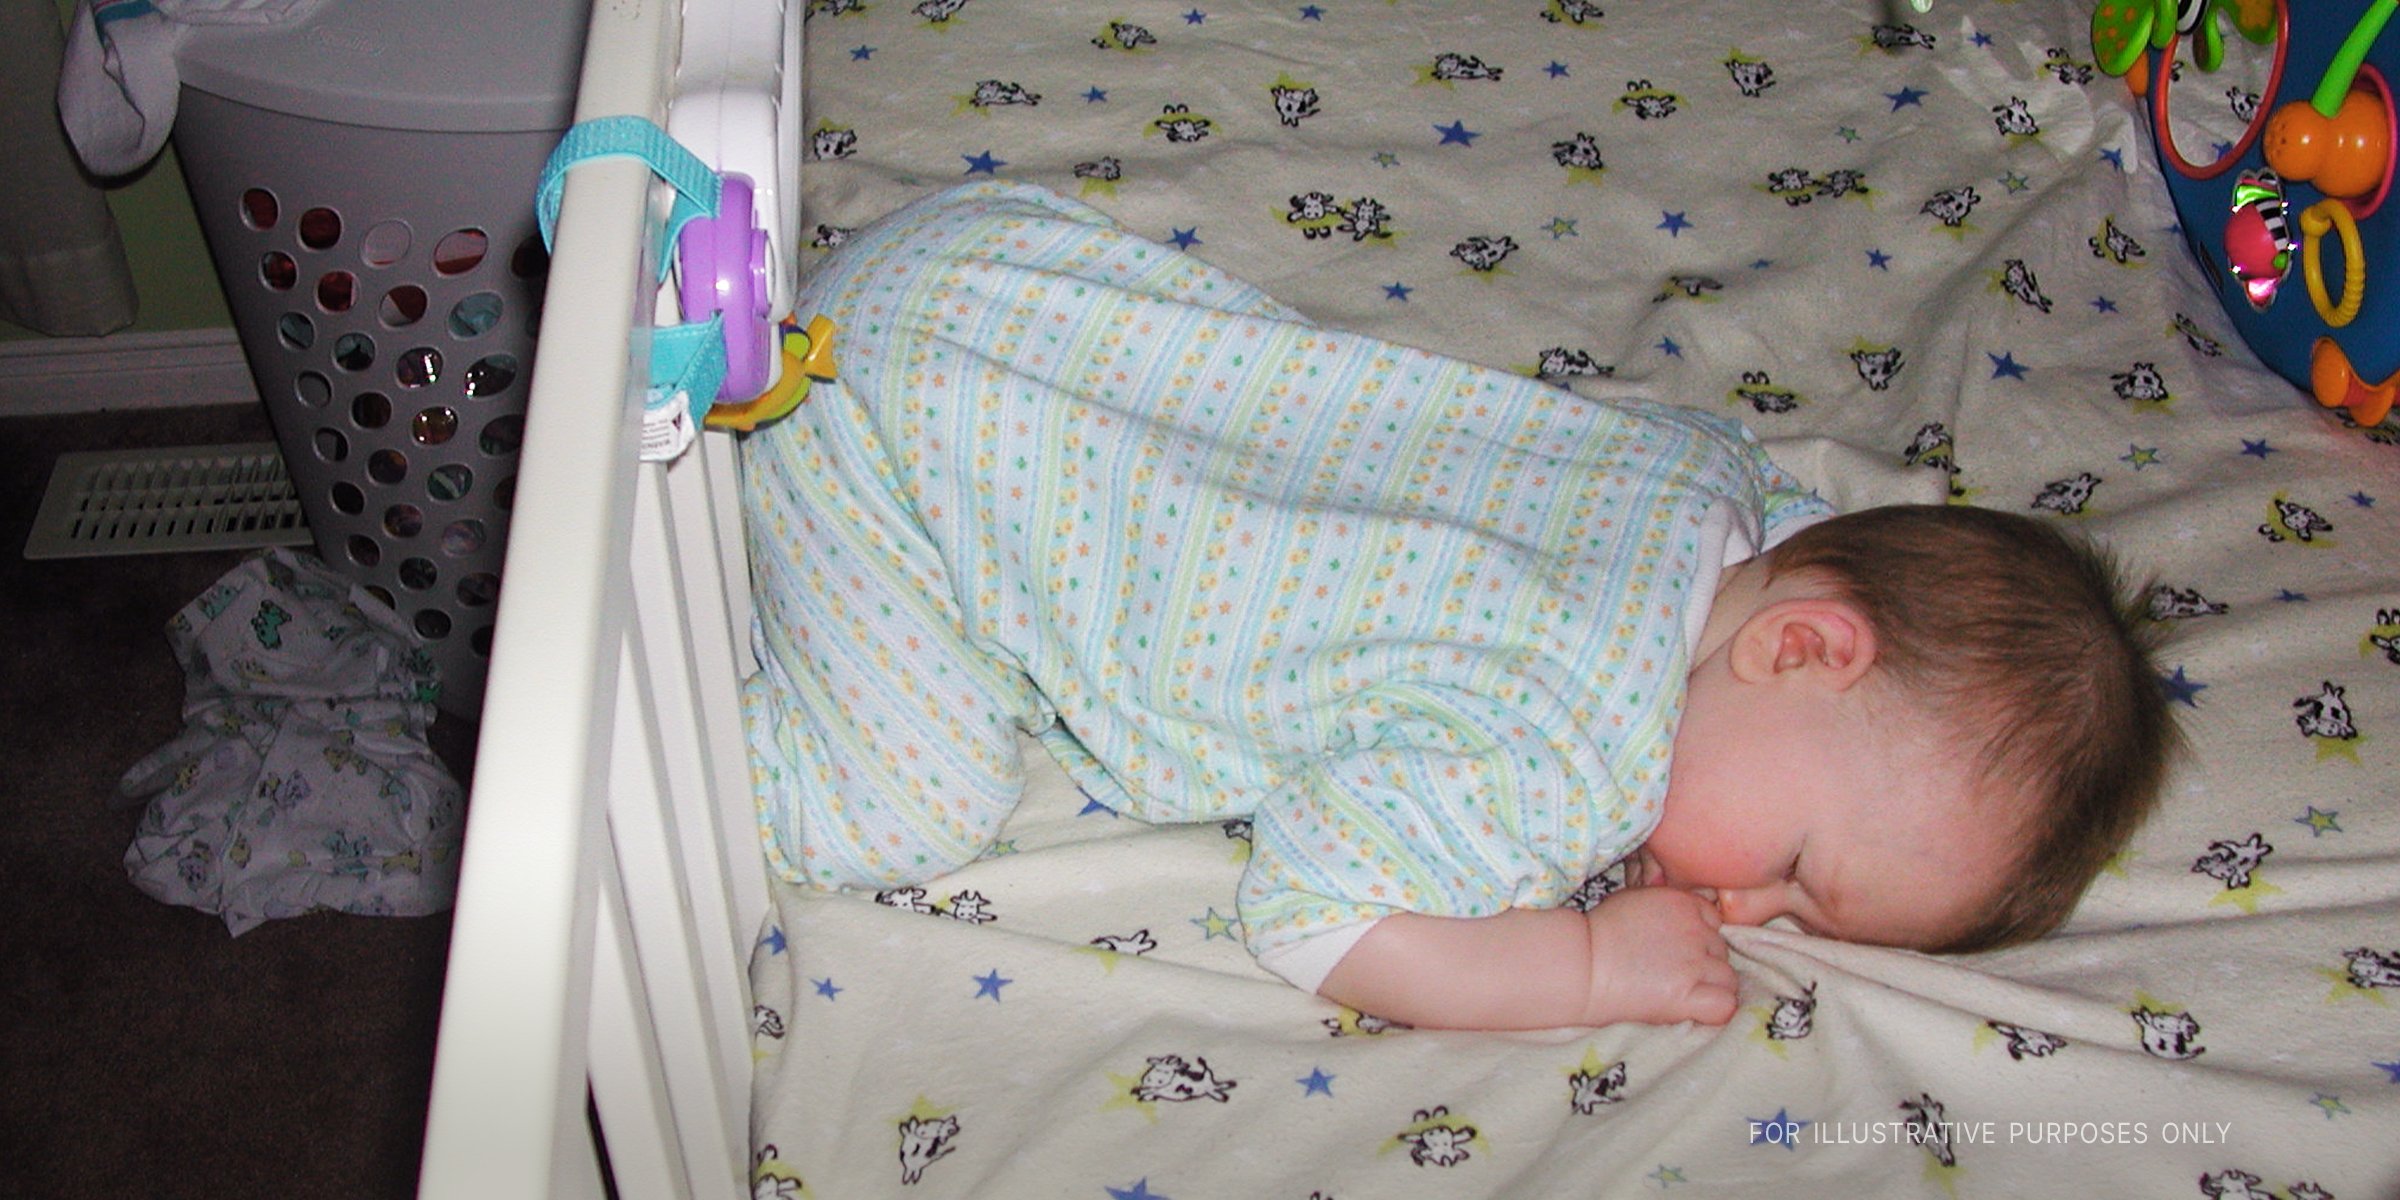 Ein schlafendes Baby in einem Bett | Quelle: Flickr/DNAMichaud (CC BY 2.0)